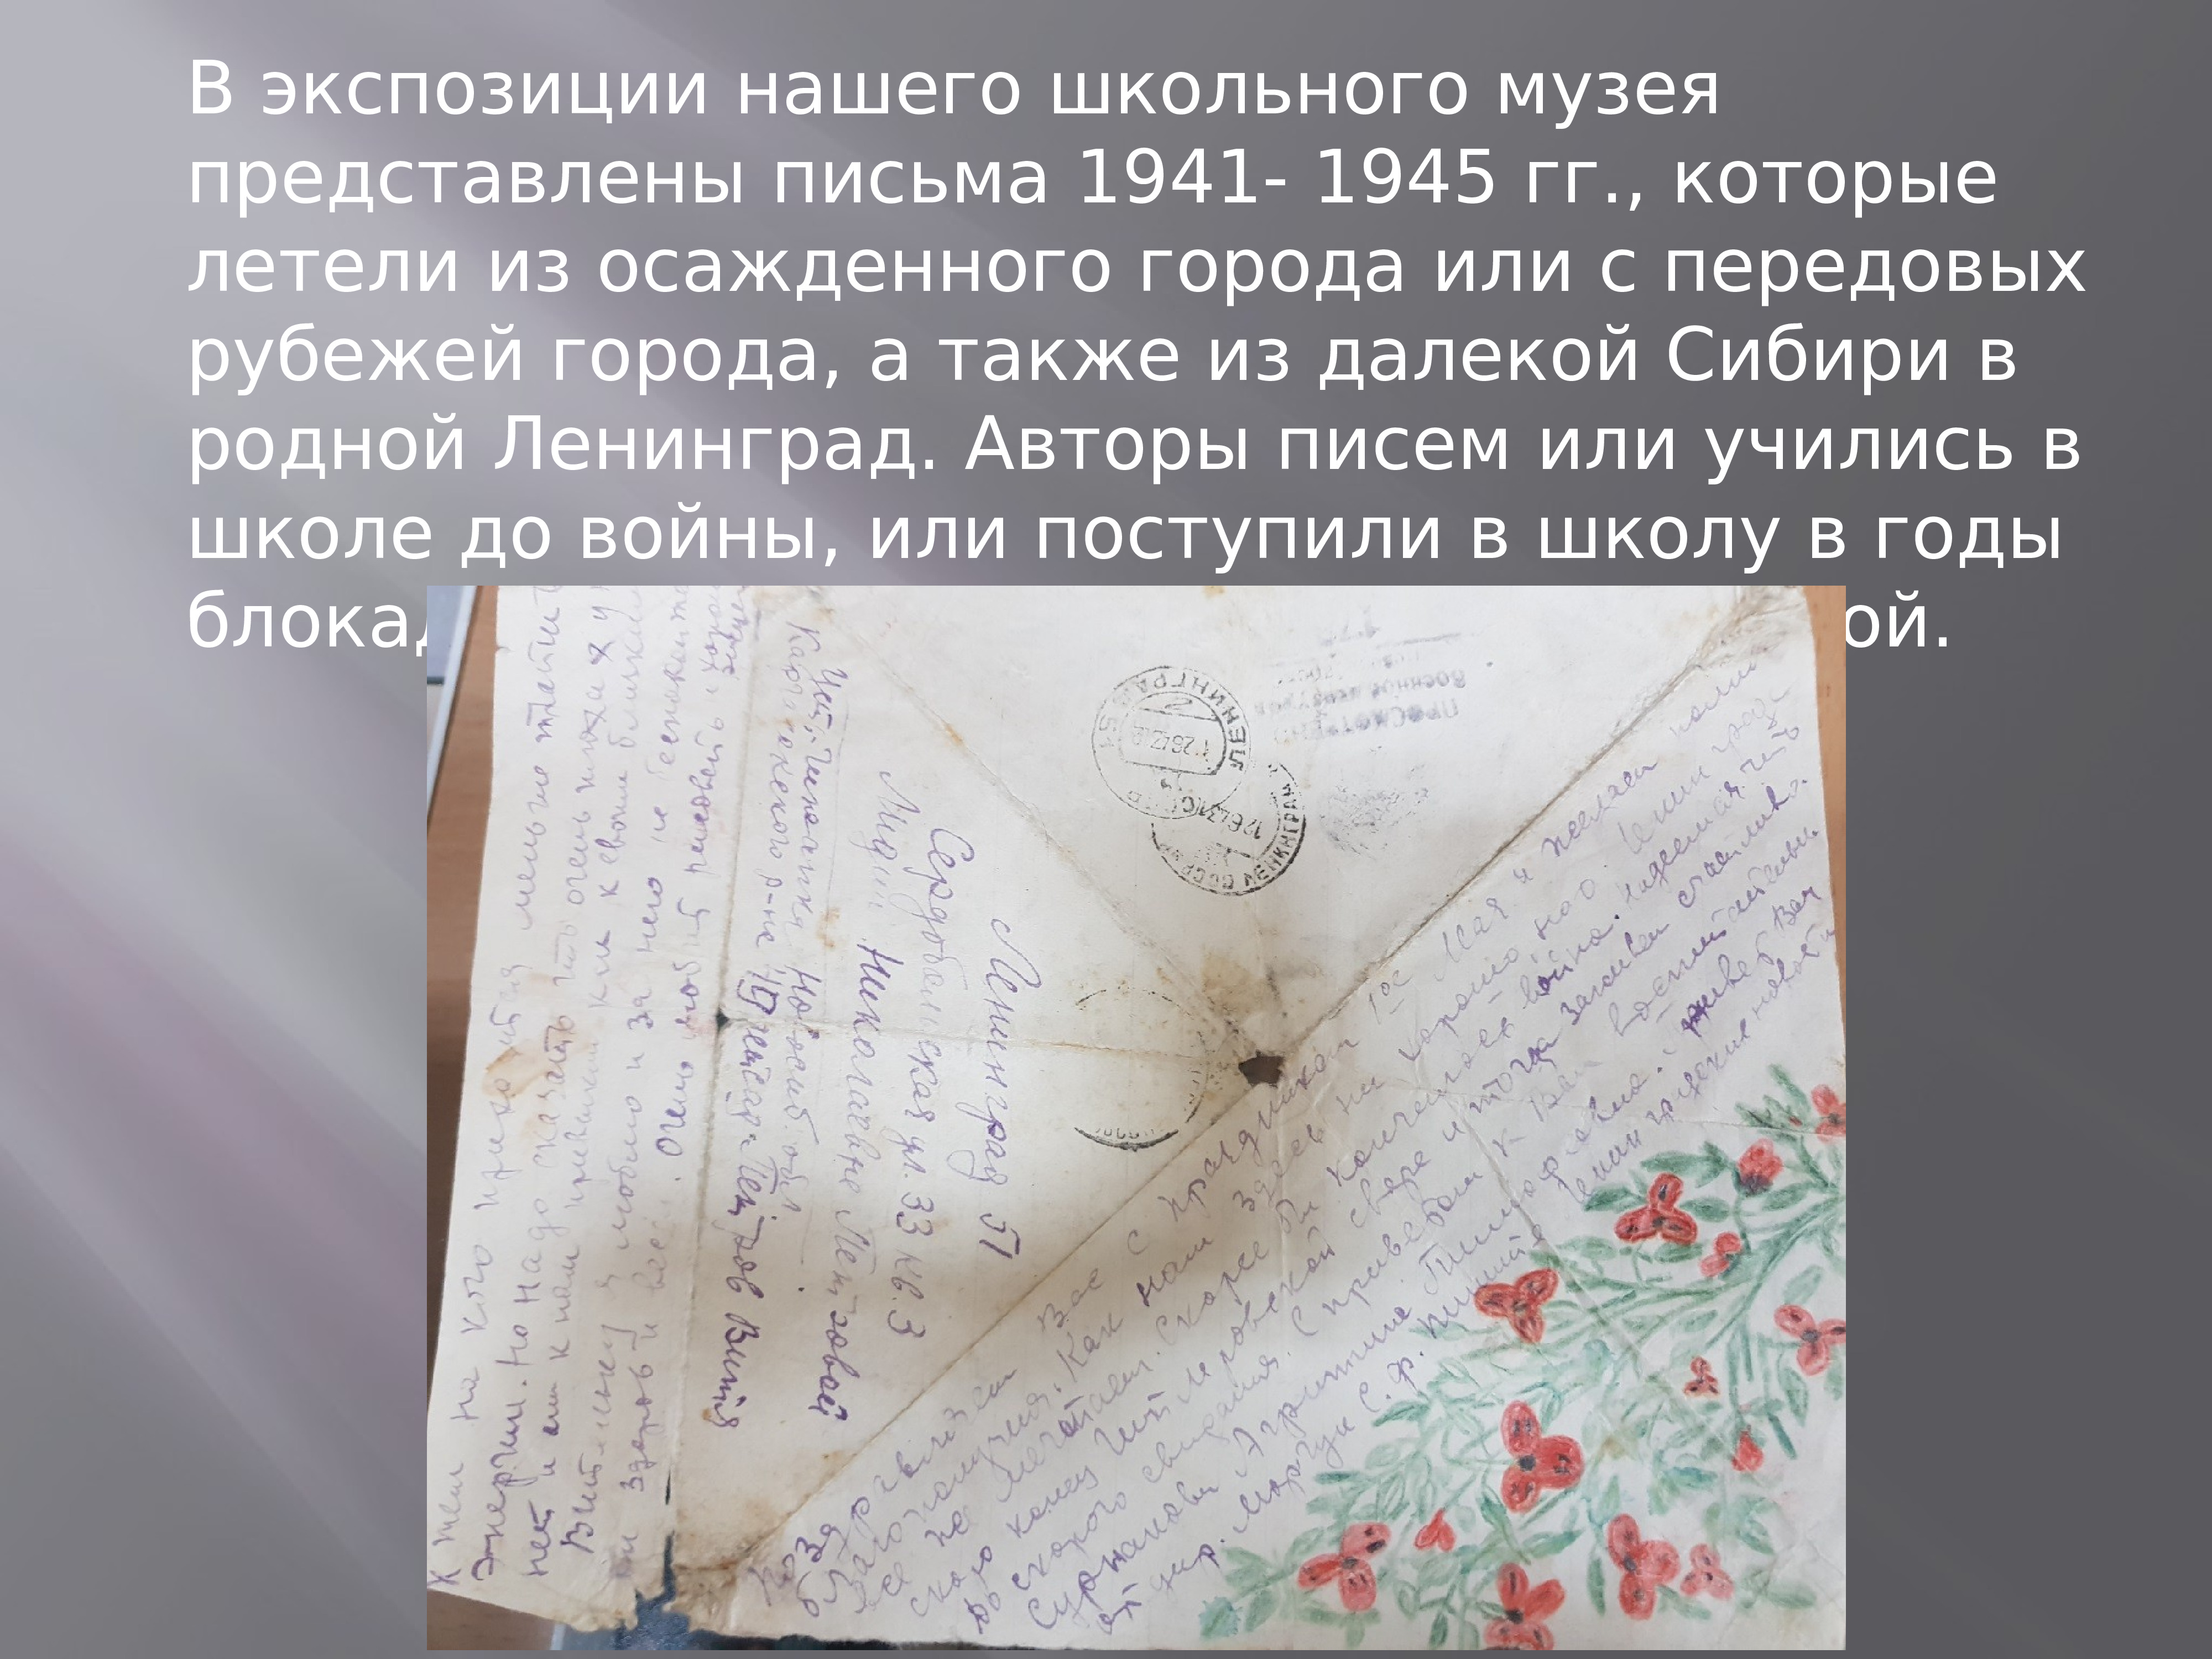 Информация представлена письмом. Письмо от школьного музея.